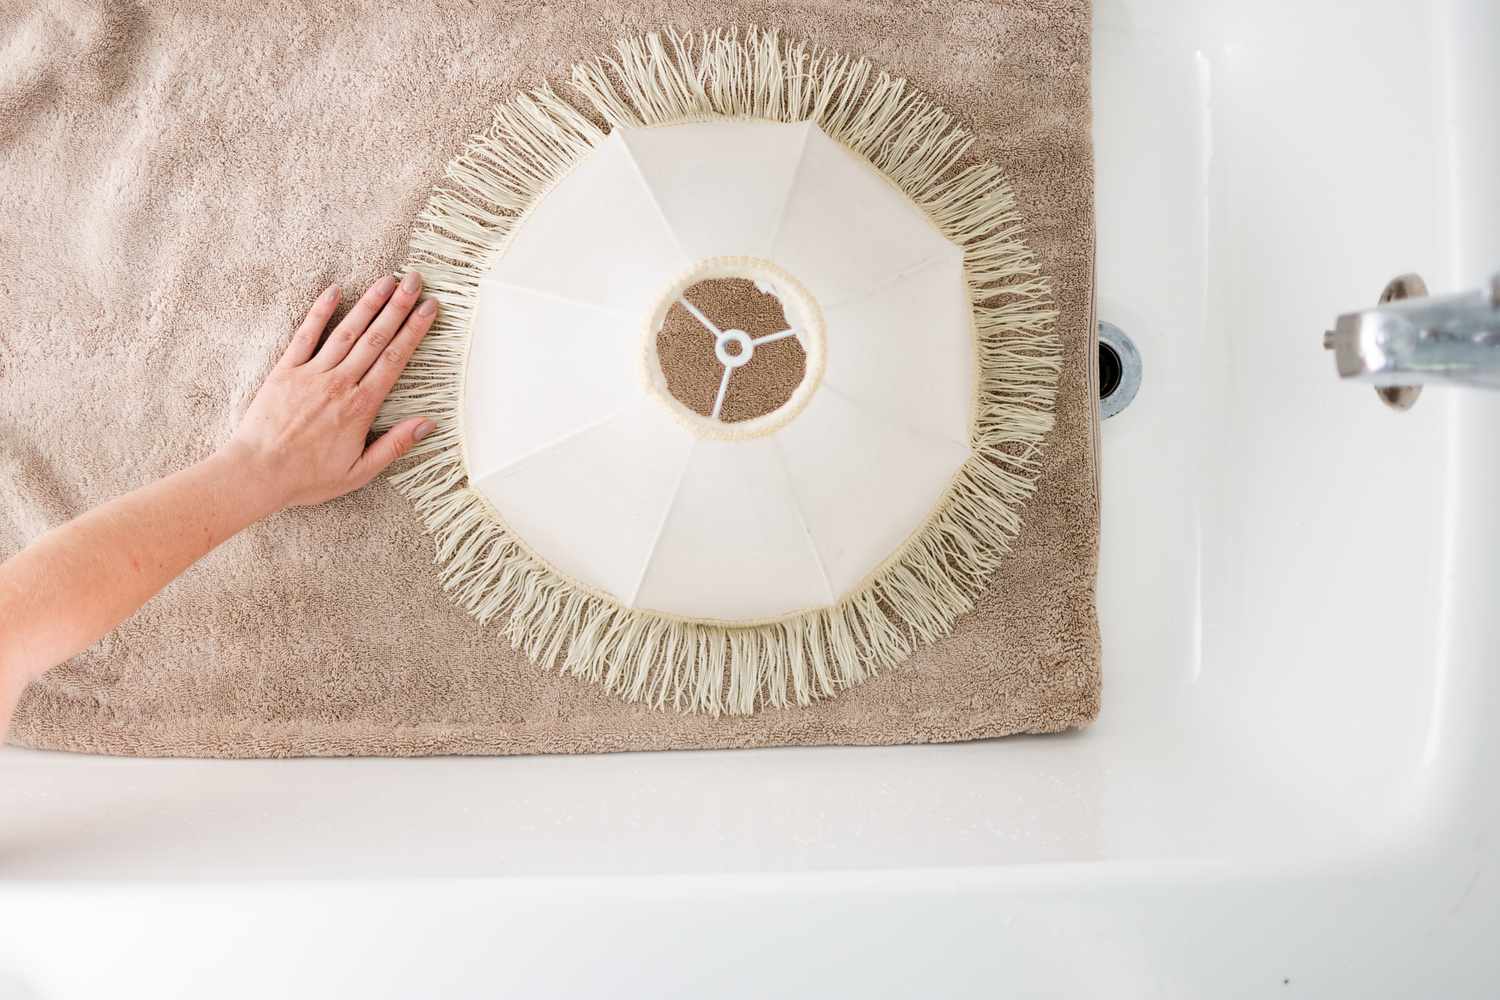 Abat-jour blanc à franges posé sur une serviette beige à sécher dans la baignoire